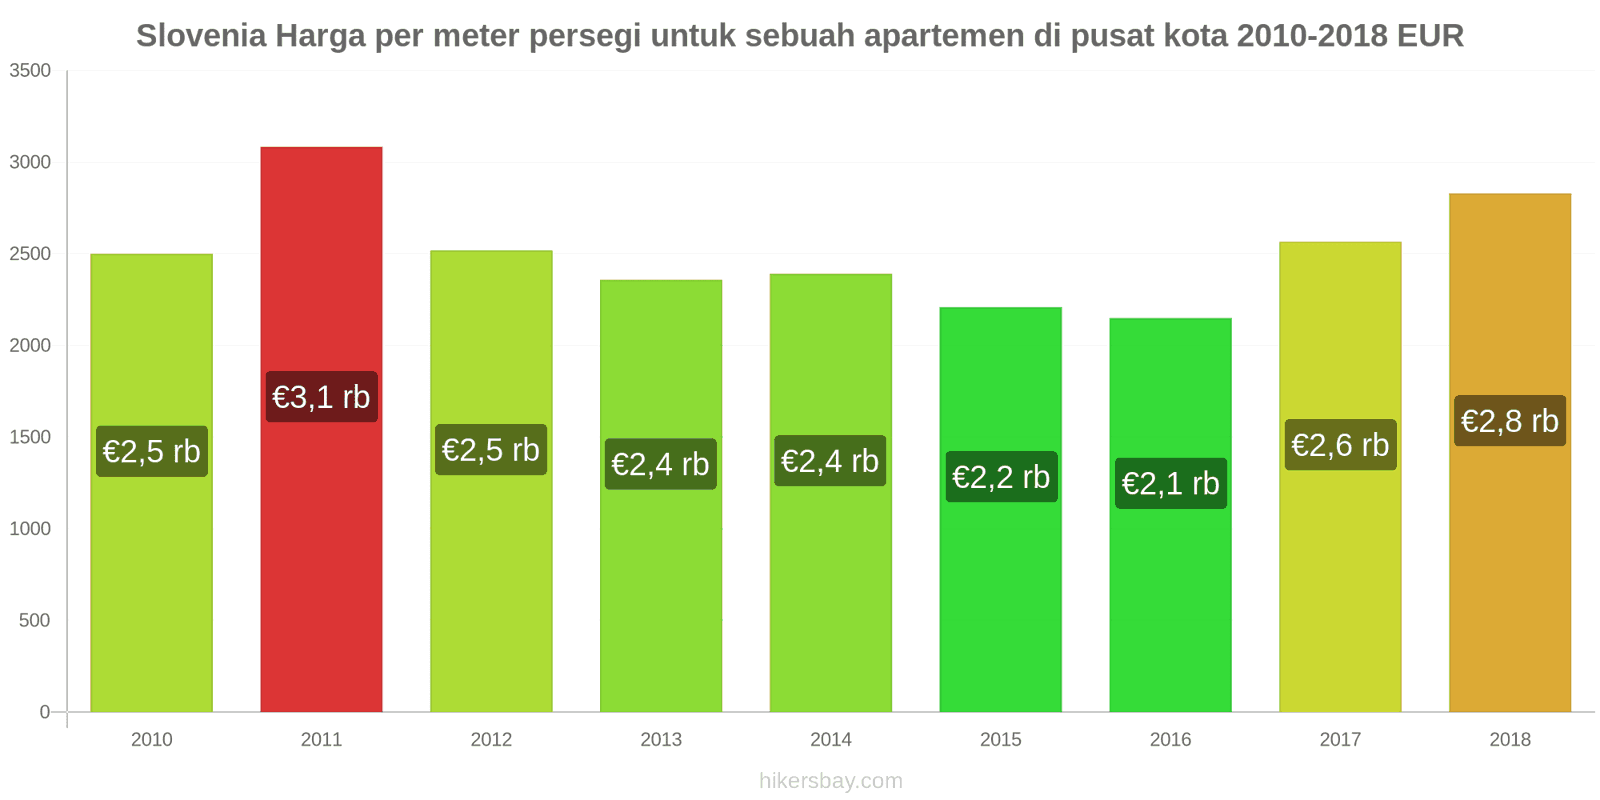 Slovenia perubahan harga Harga per meter persegi untuk apartemen di pusat kota hikersbay.com